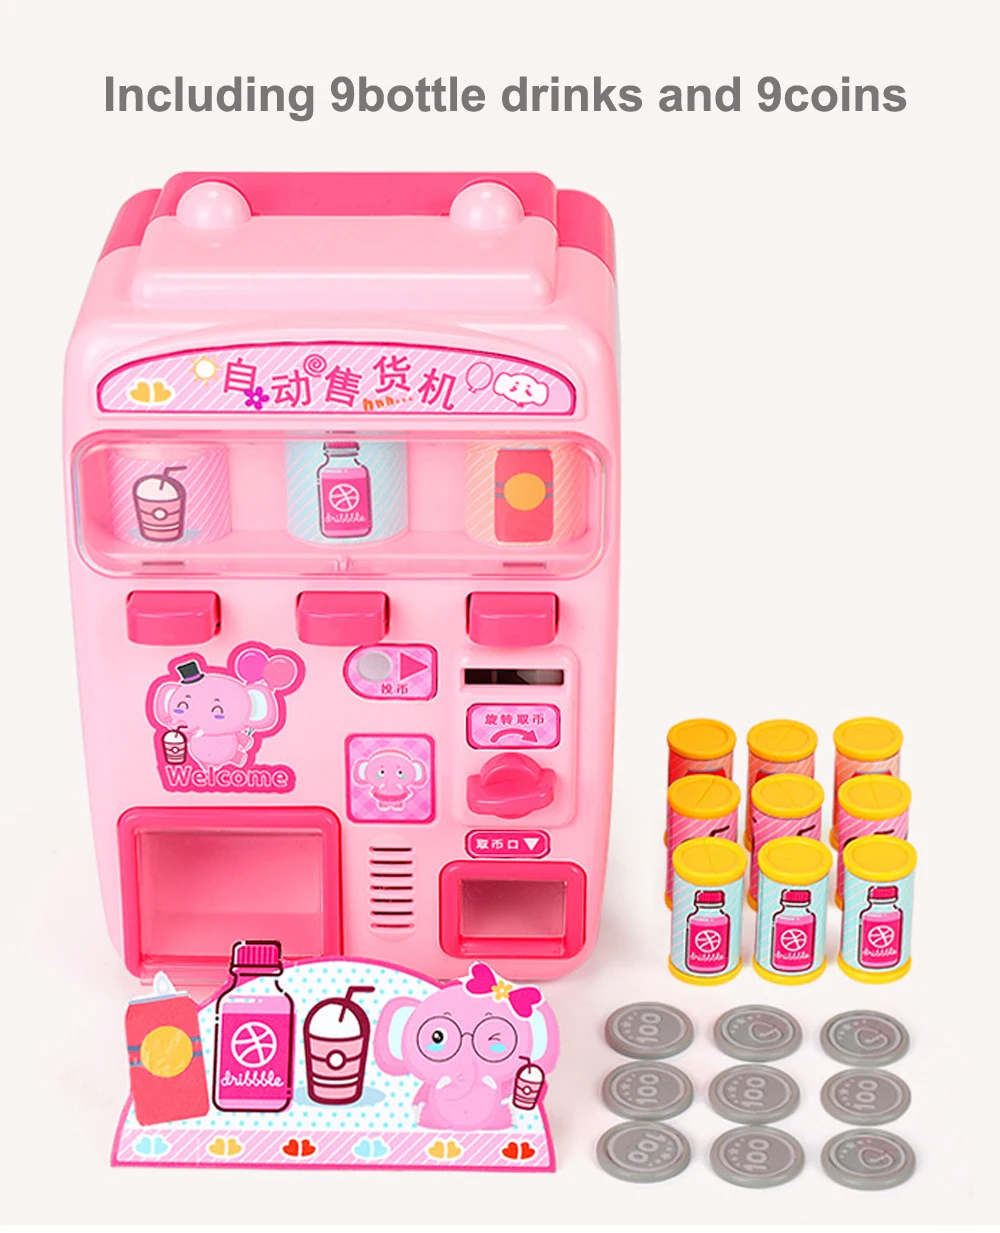 Моделирование автоматический говорящий торговый автомат игрушки Дети ролевые игры напитки шоппинг игрушки подарок для детей